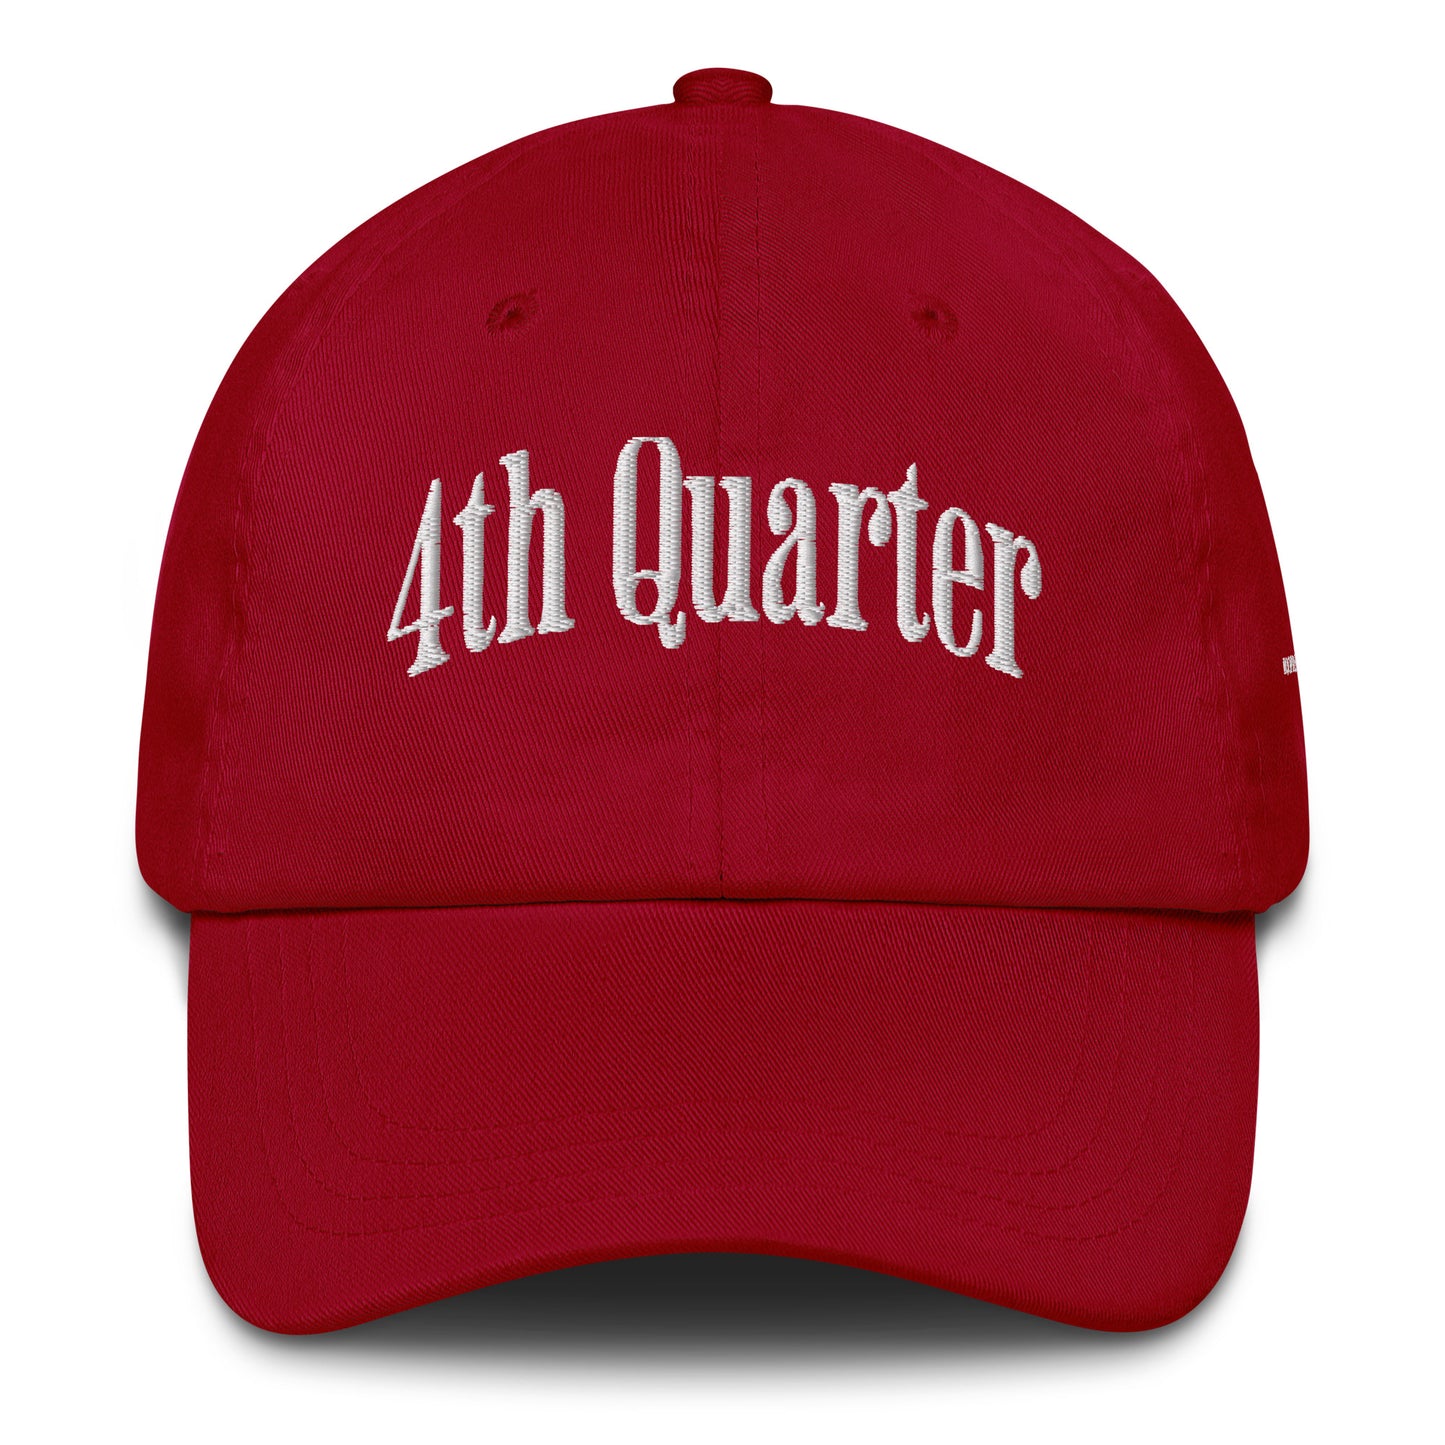 4th Quarter Cap